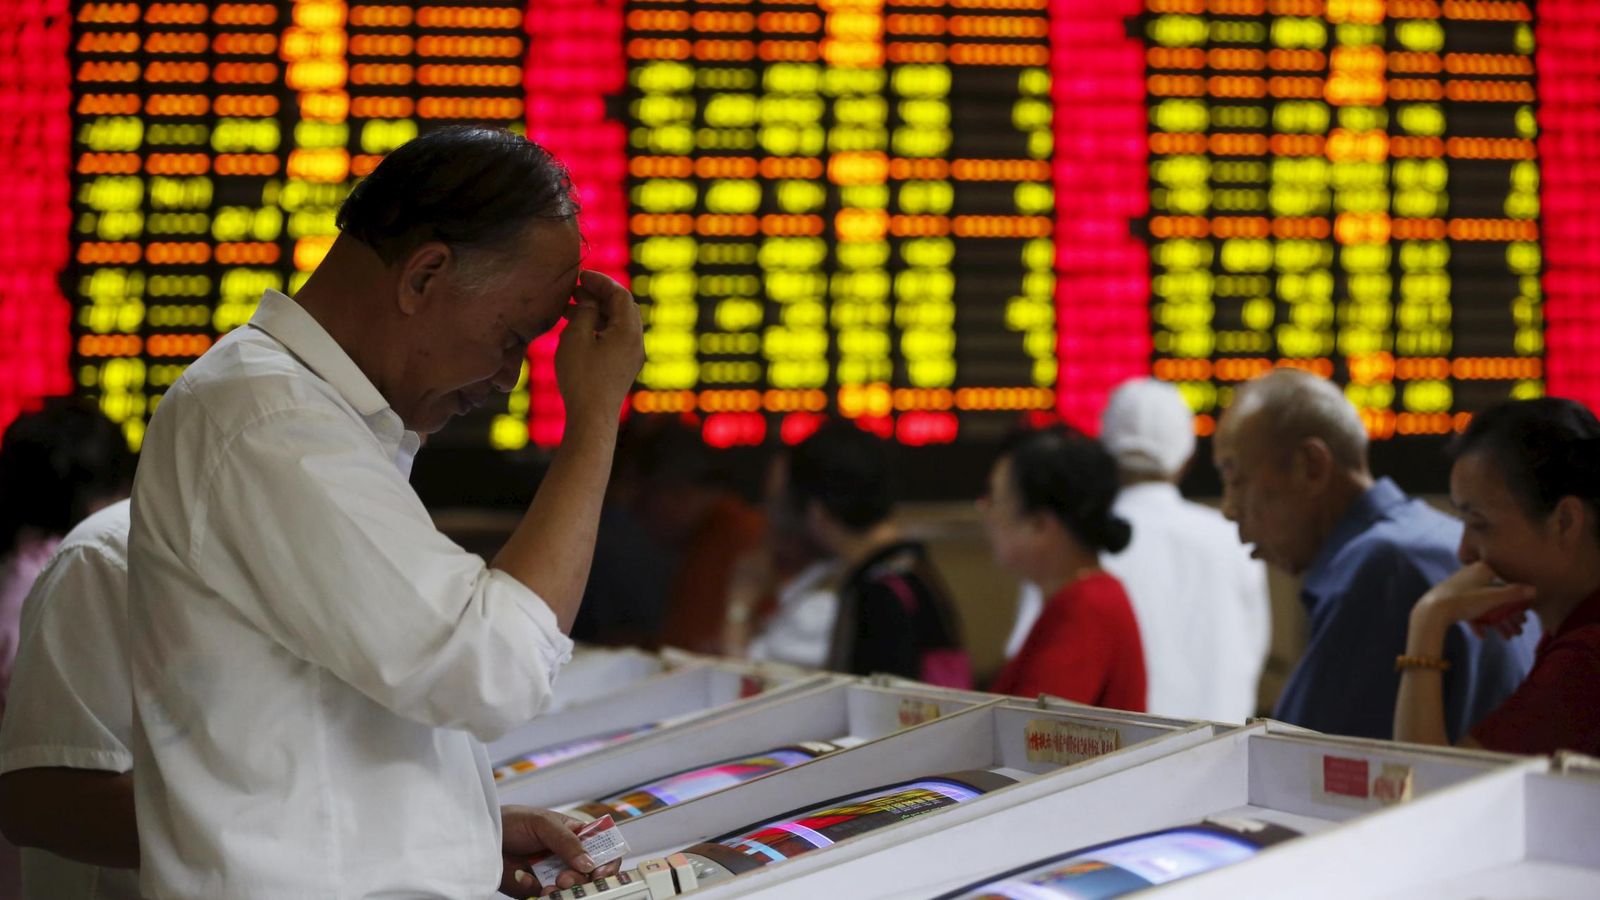 Foto: Un inversor muestra un gesto preocupado ante las pantallas de cotizaciones de la bolsa china.